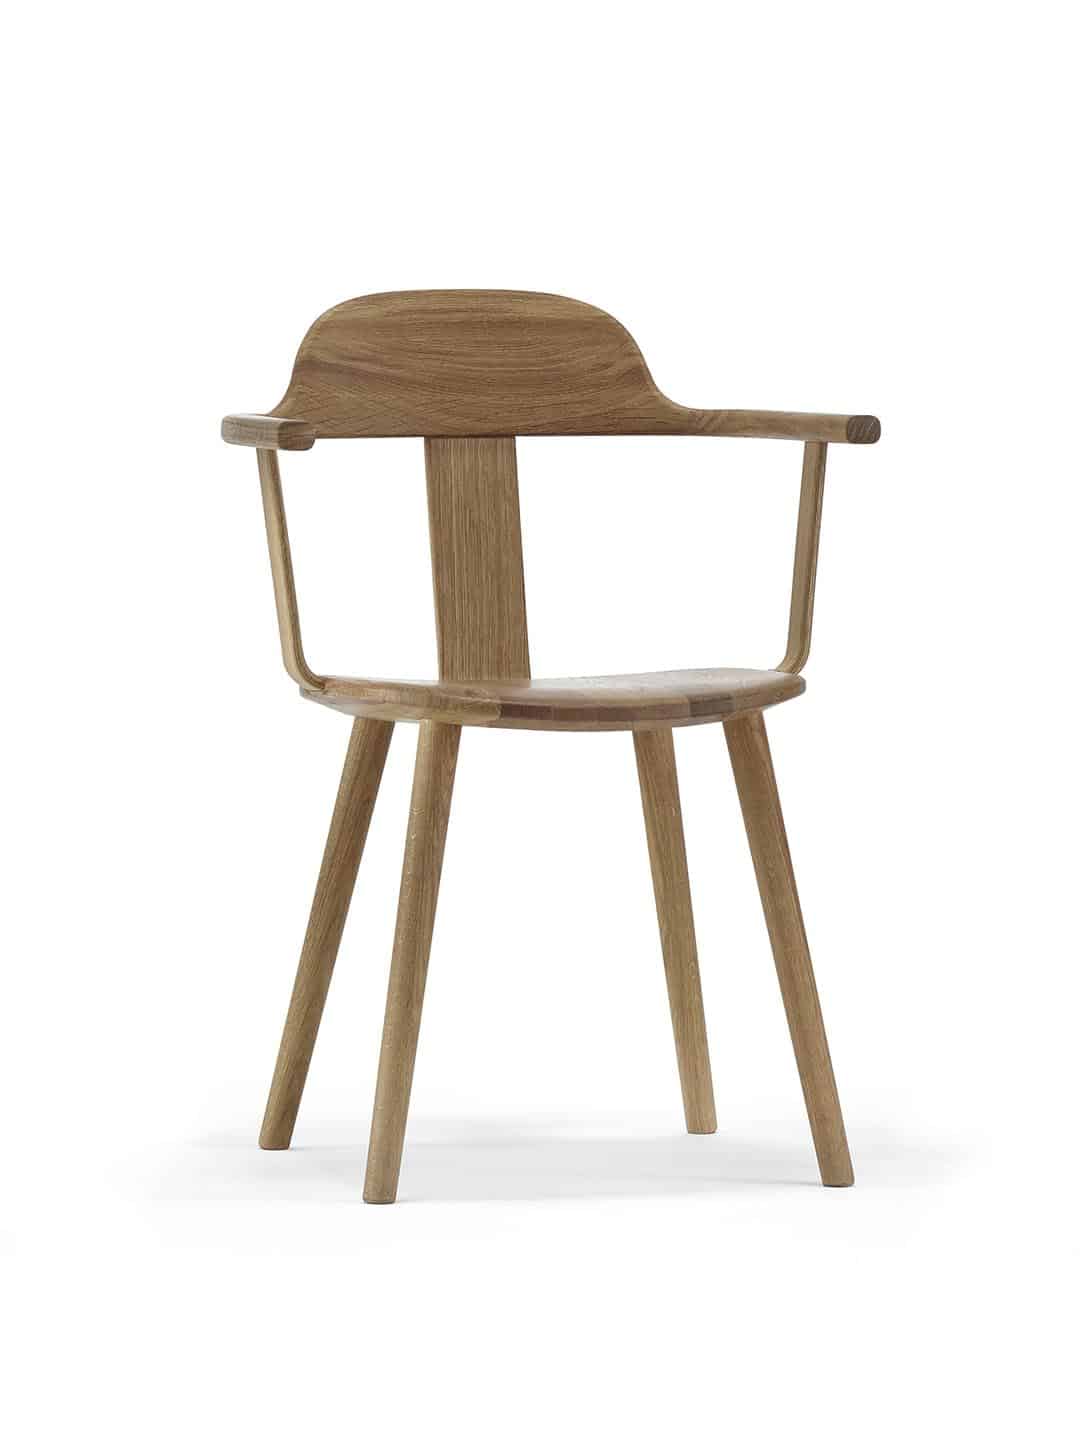 Дизайнерское кресло Stolab Sture из натурального дуба